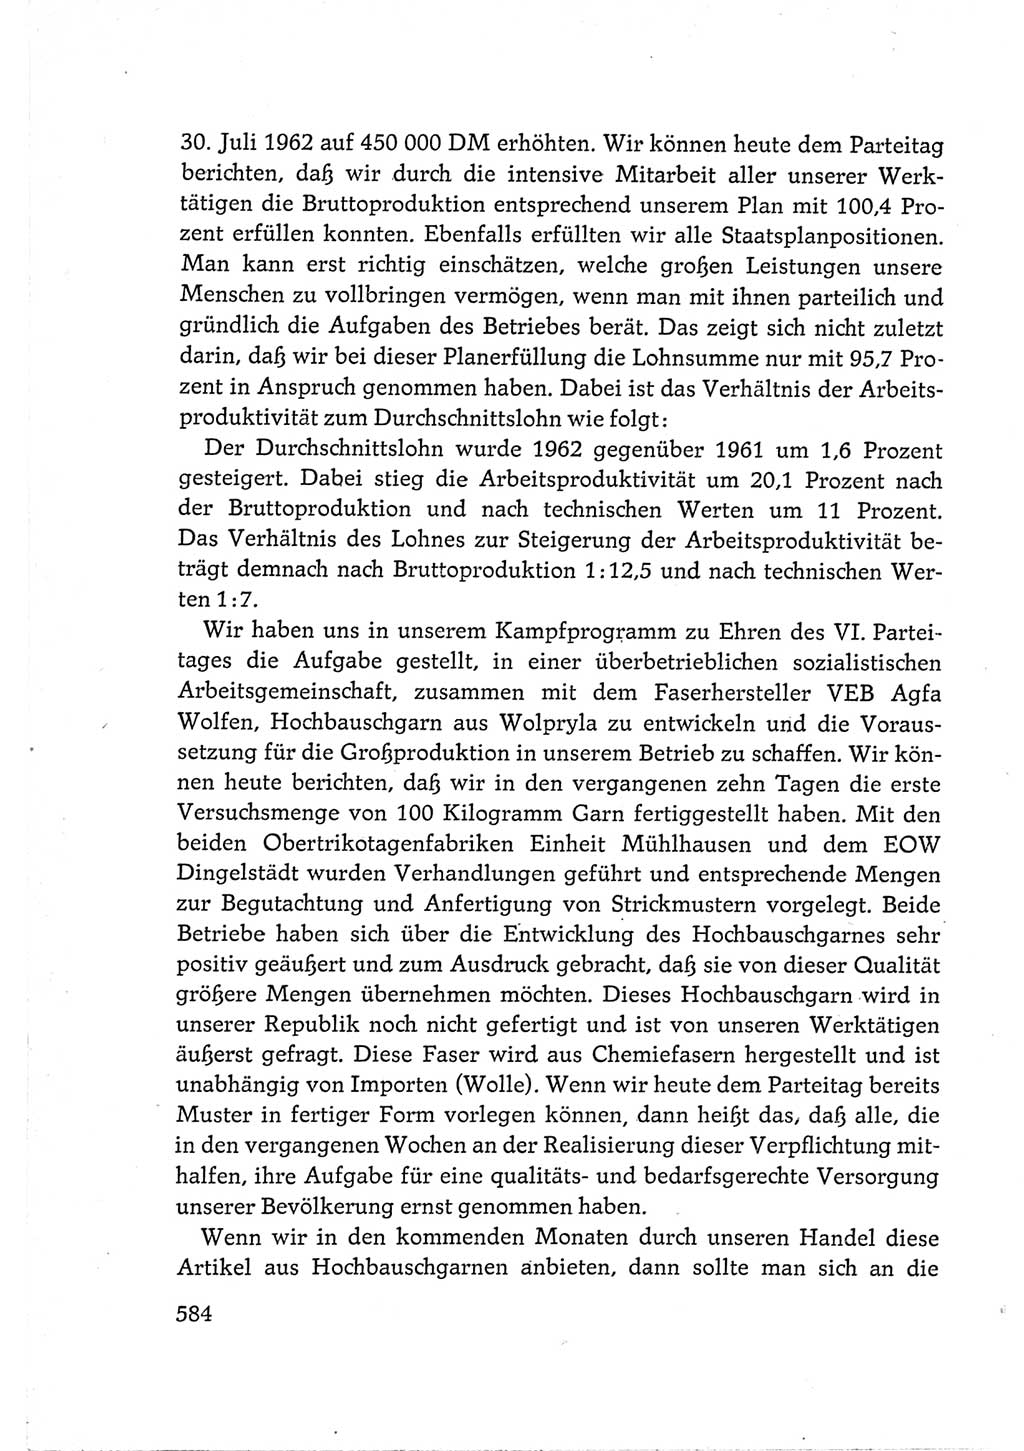 Protokoll der Verhandlungen des Ⅵ. Parteitages der Sozialistischen Einheitspartei Deutschlands (SED) [Deutsche Demokratische Republik (DDR)] 1963, Band Ⅲ, Seite 584 (Prot. Verh. Ⅵ. PT SED DDR 1963, Bd. Ⅲ, S. 584)